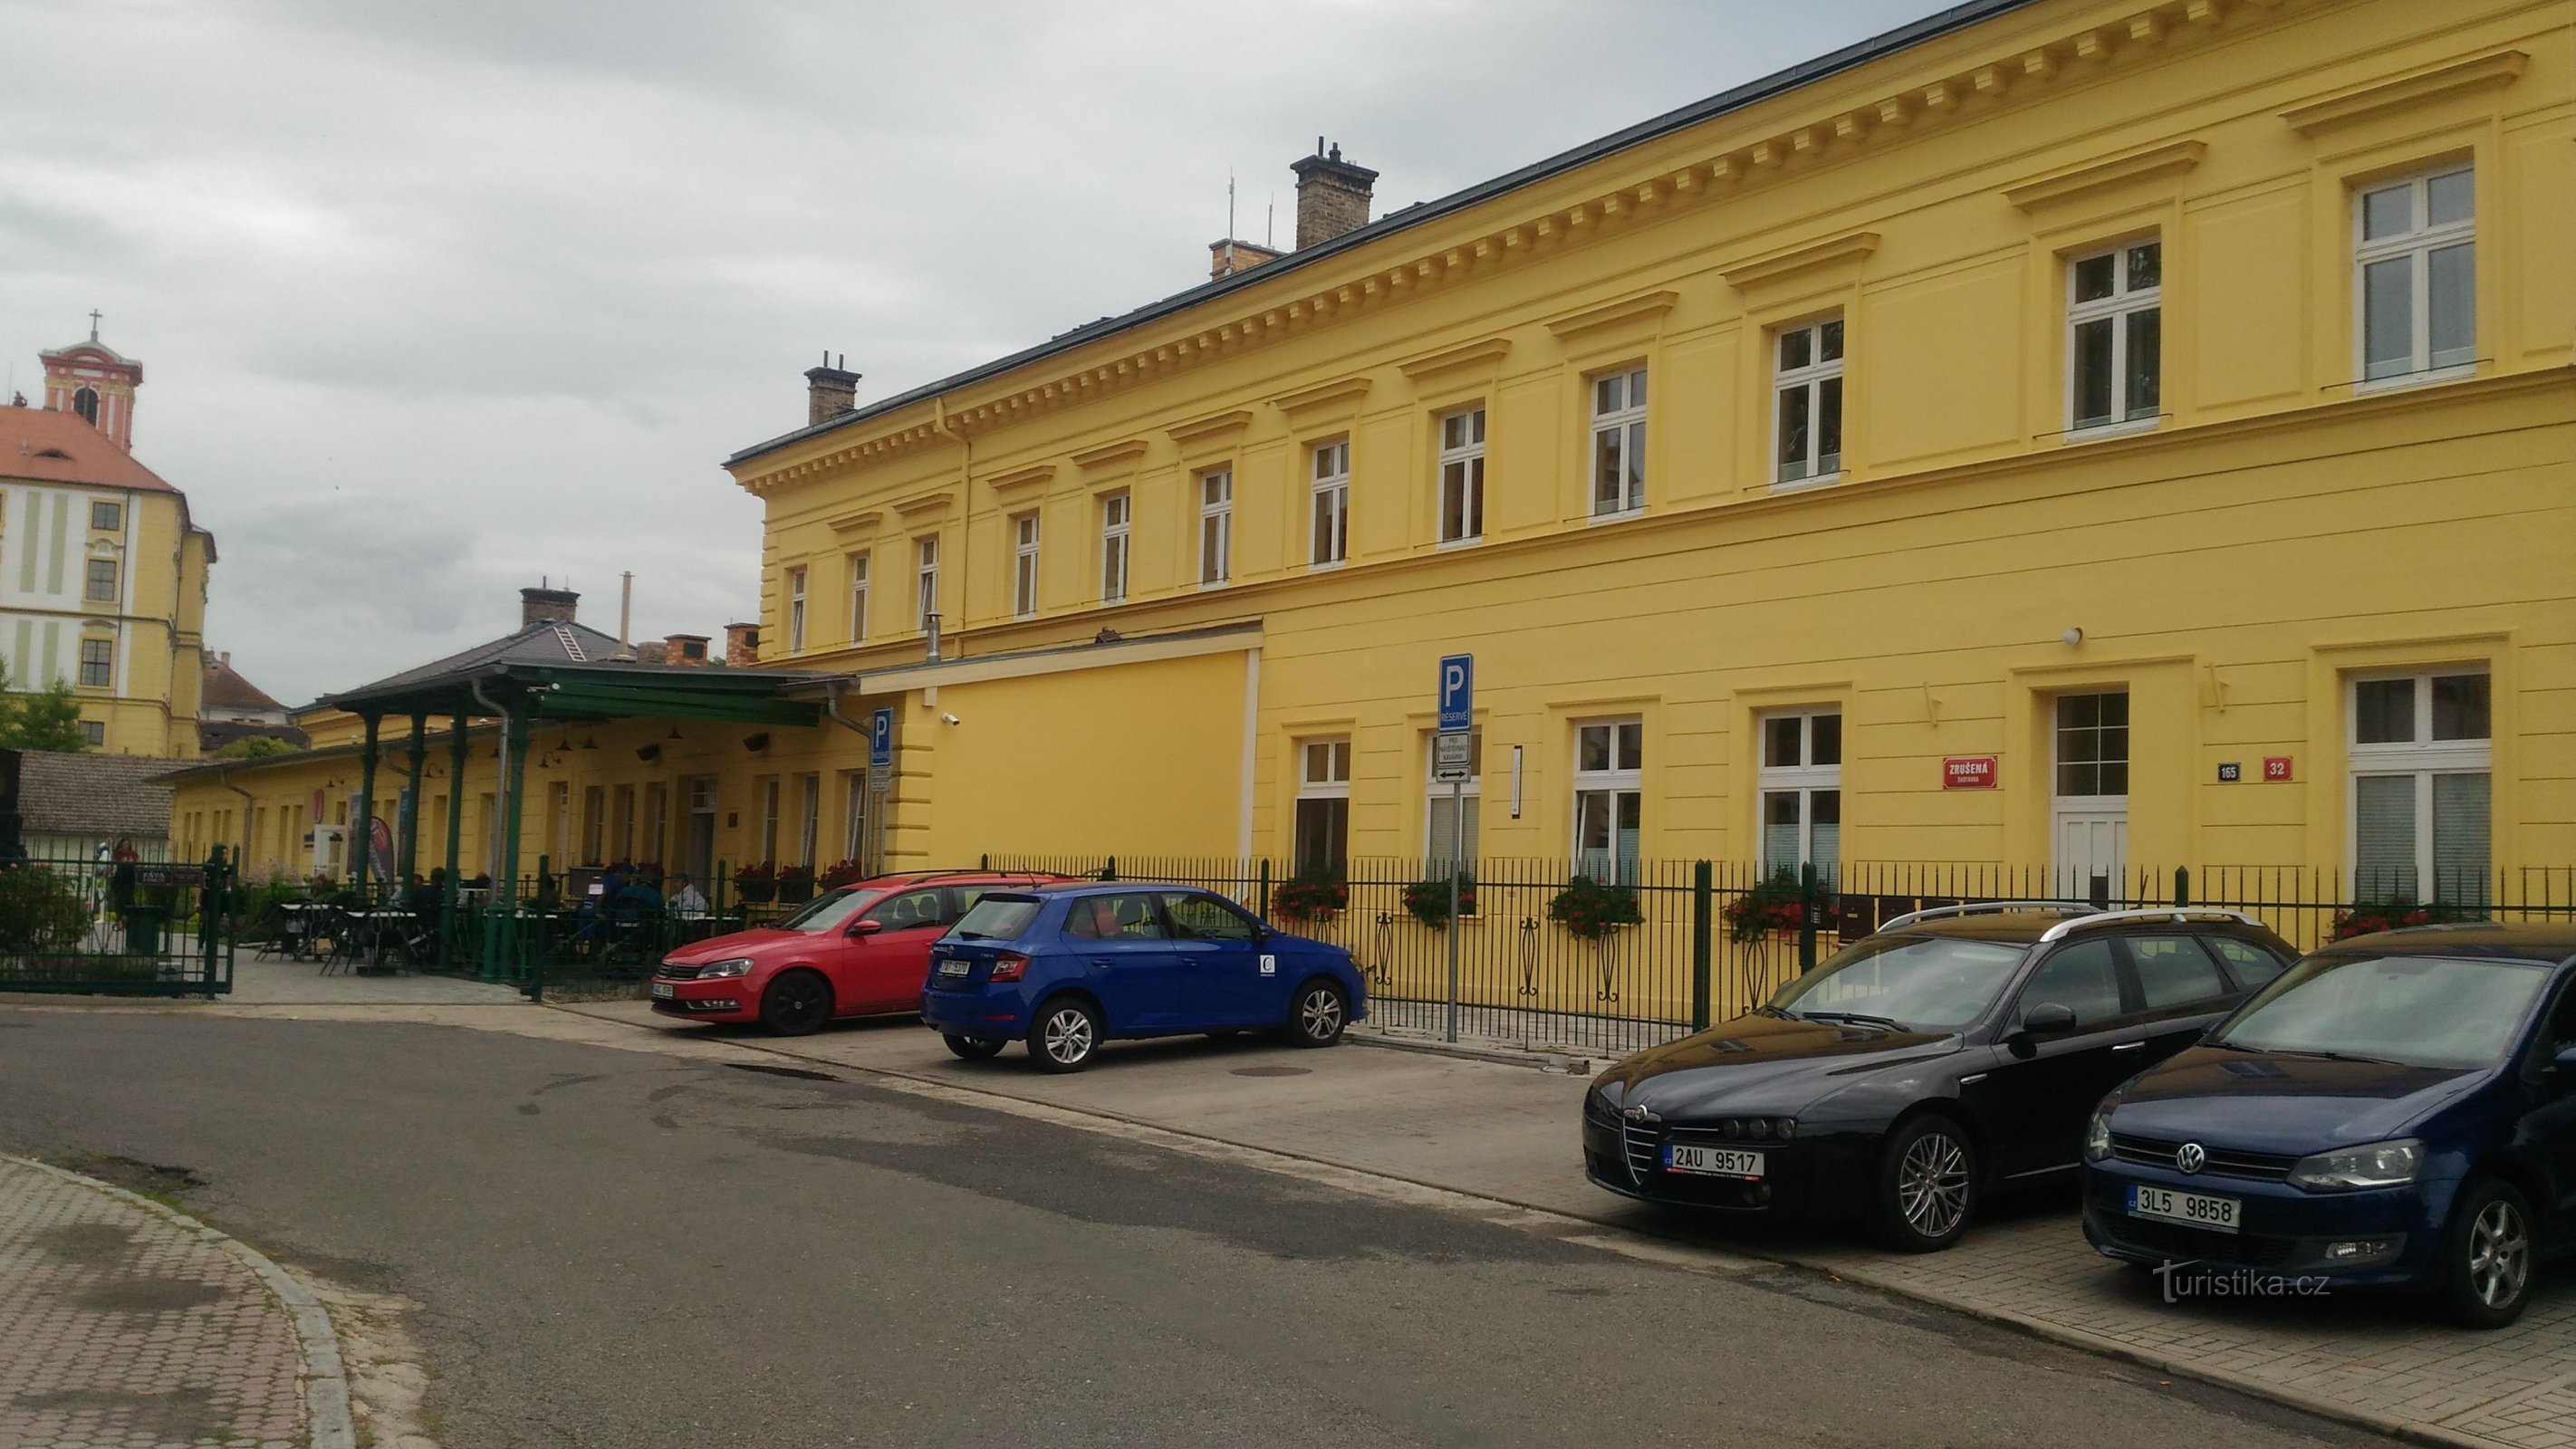 former station Litoměřice lower station